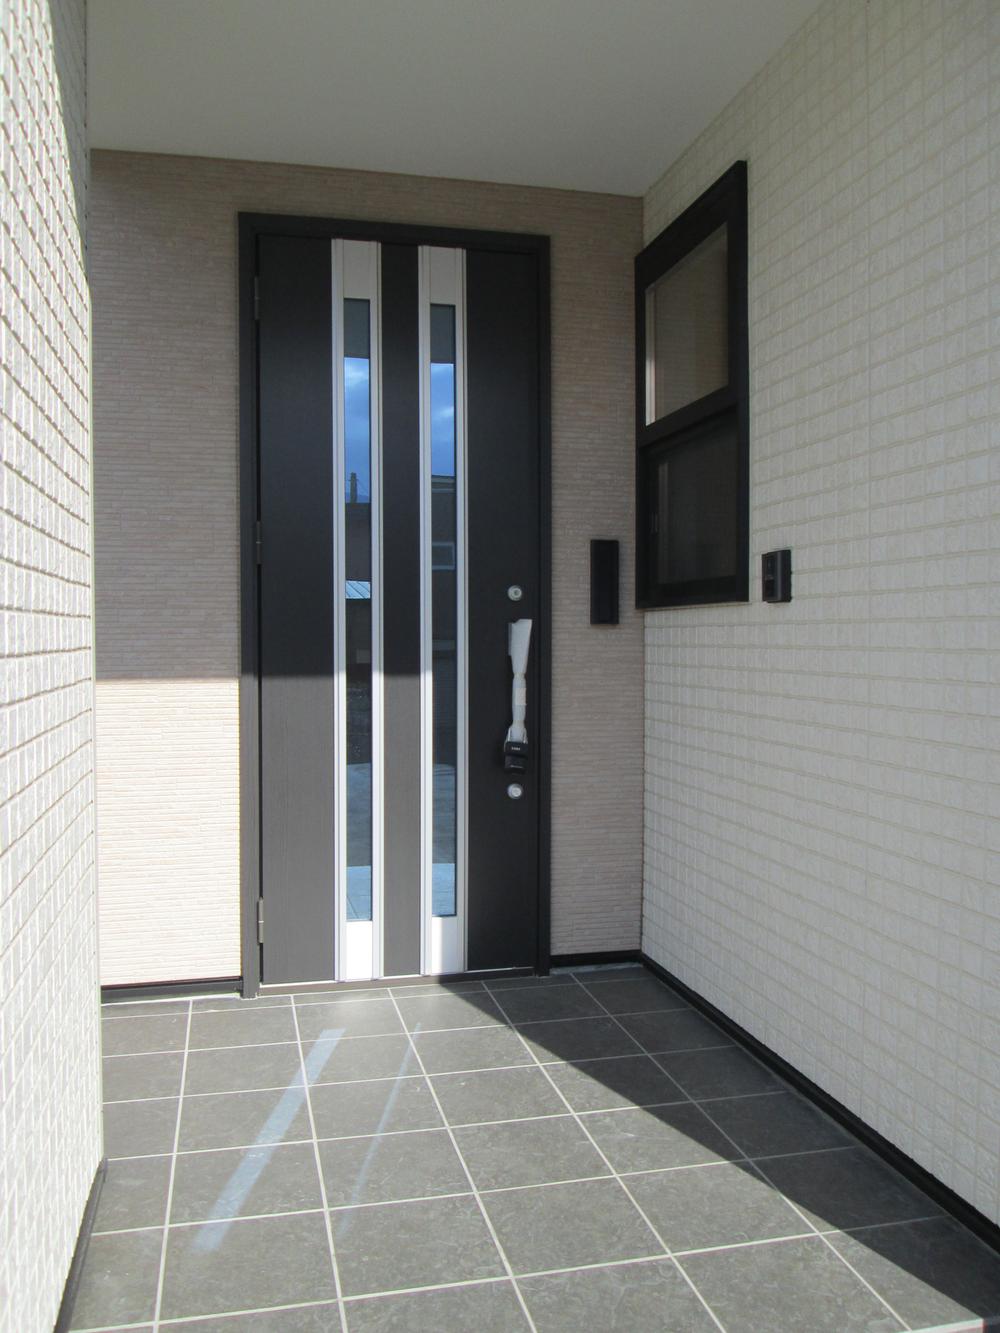 Entrance. Heavy entrance door